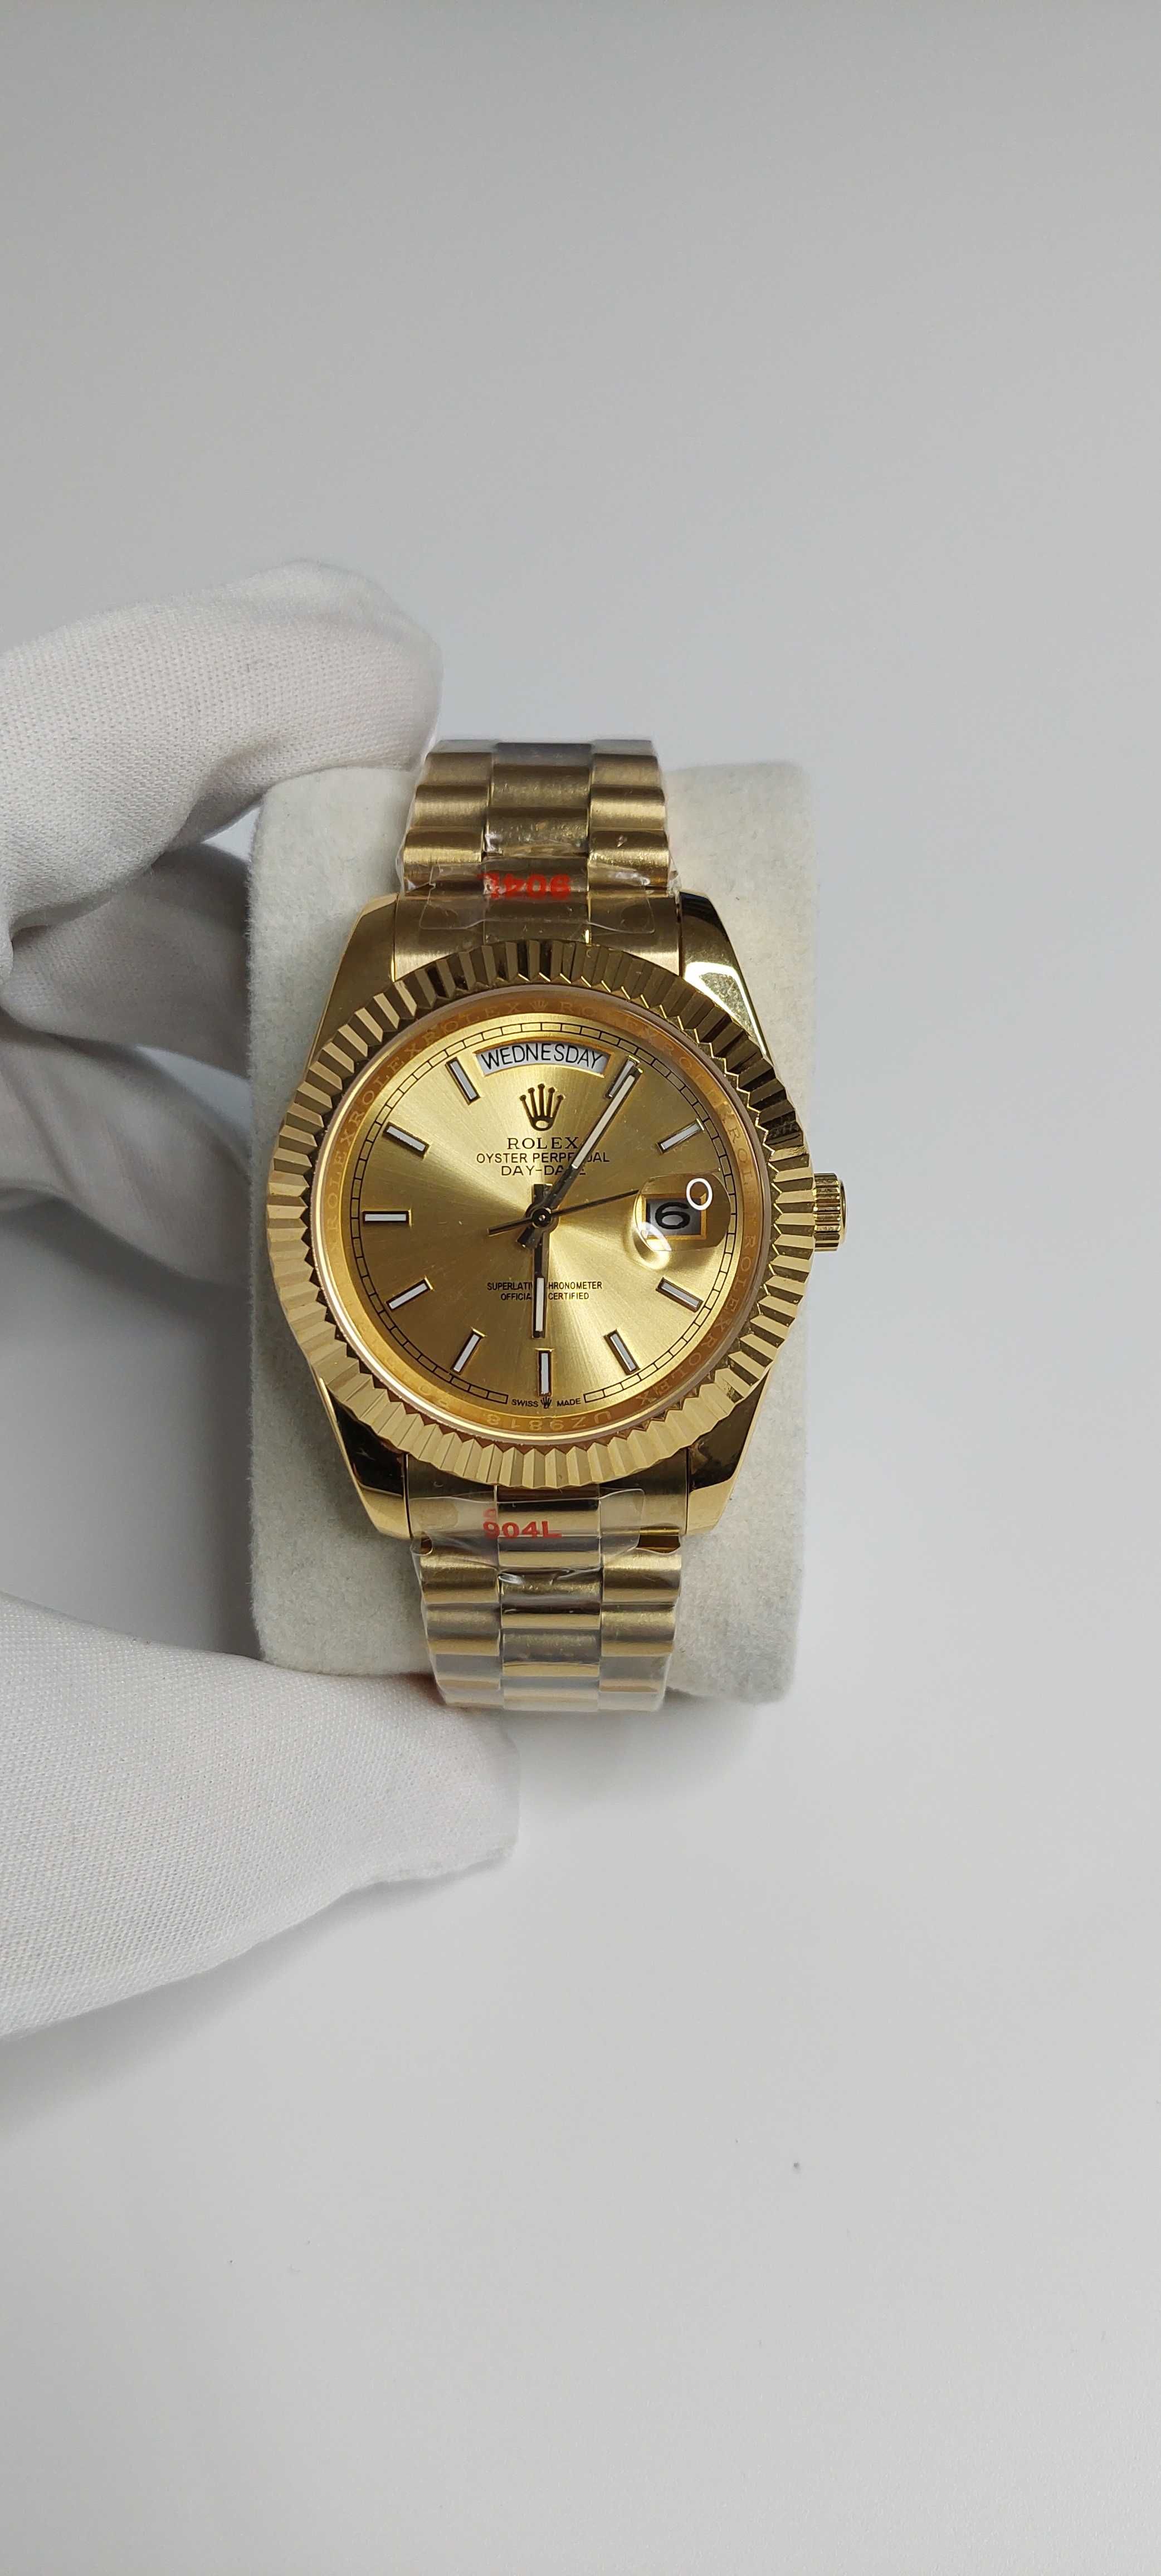 Zegarek Rolex datejust gold